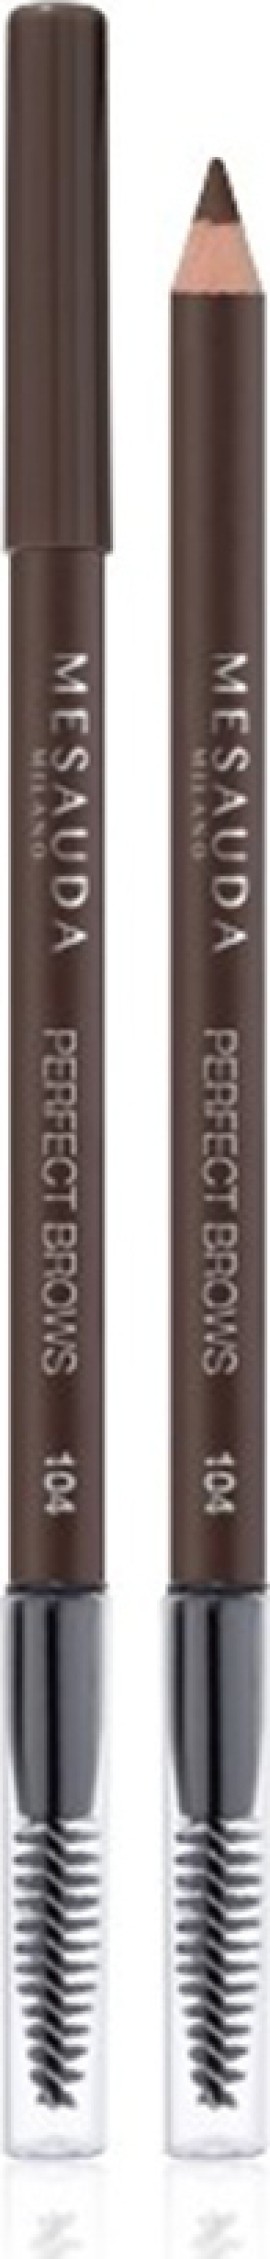 Mesauda Milano Perfect Brows Eyebrow Pencil 104 Dark 1,42gr